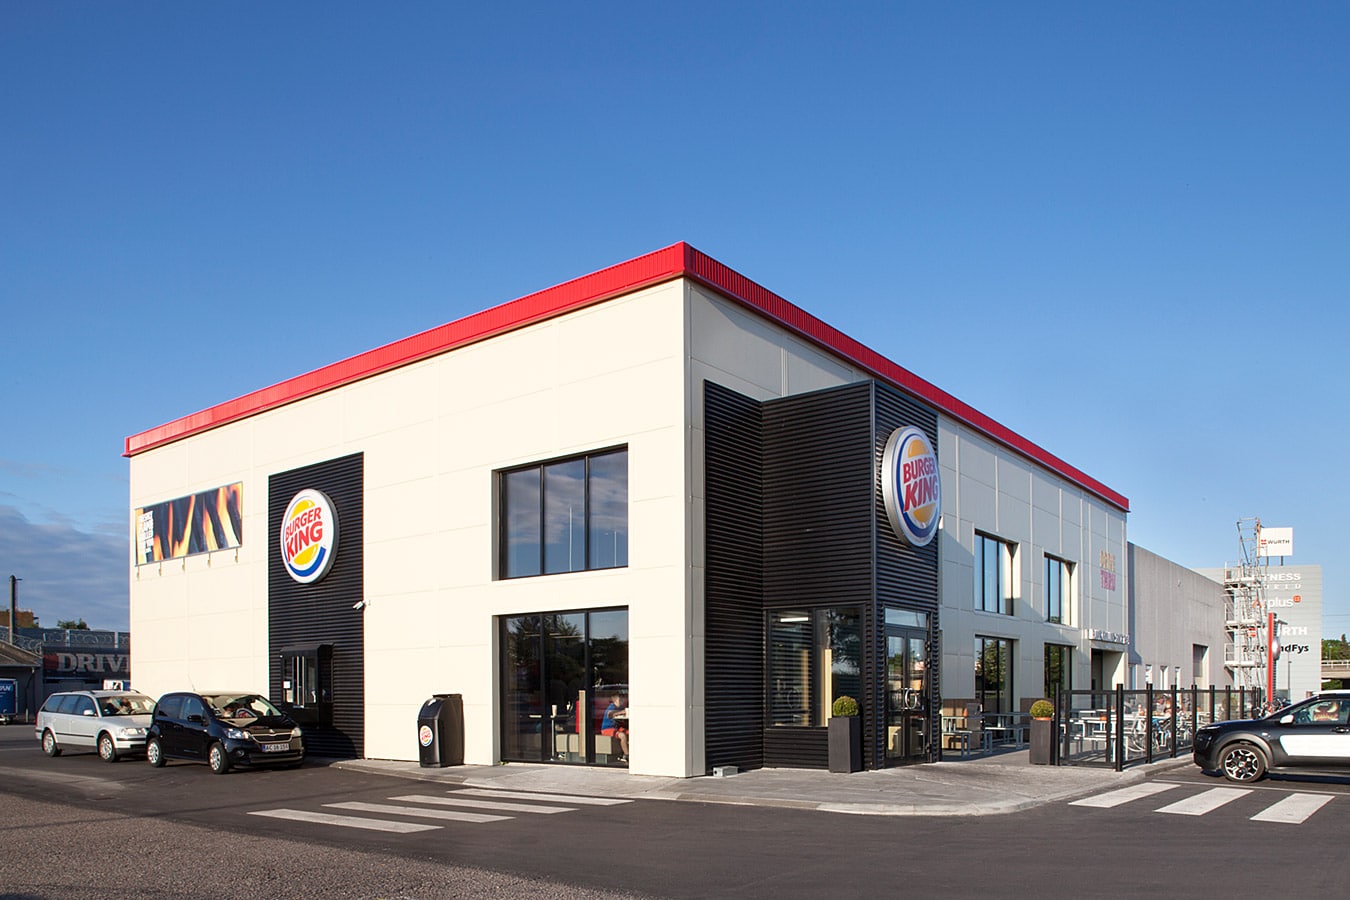 Ombygning til Burger King